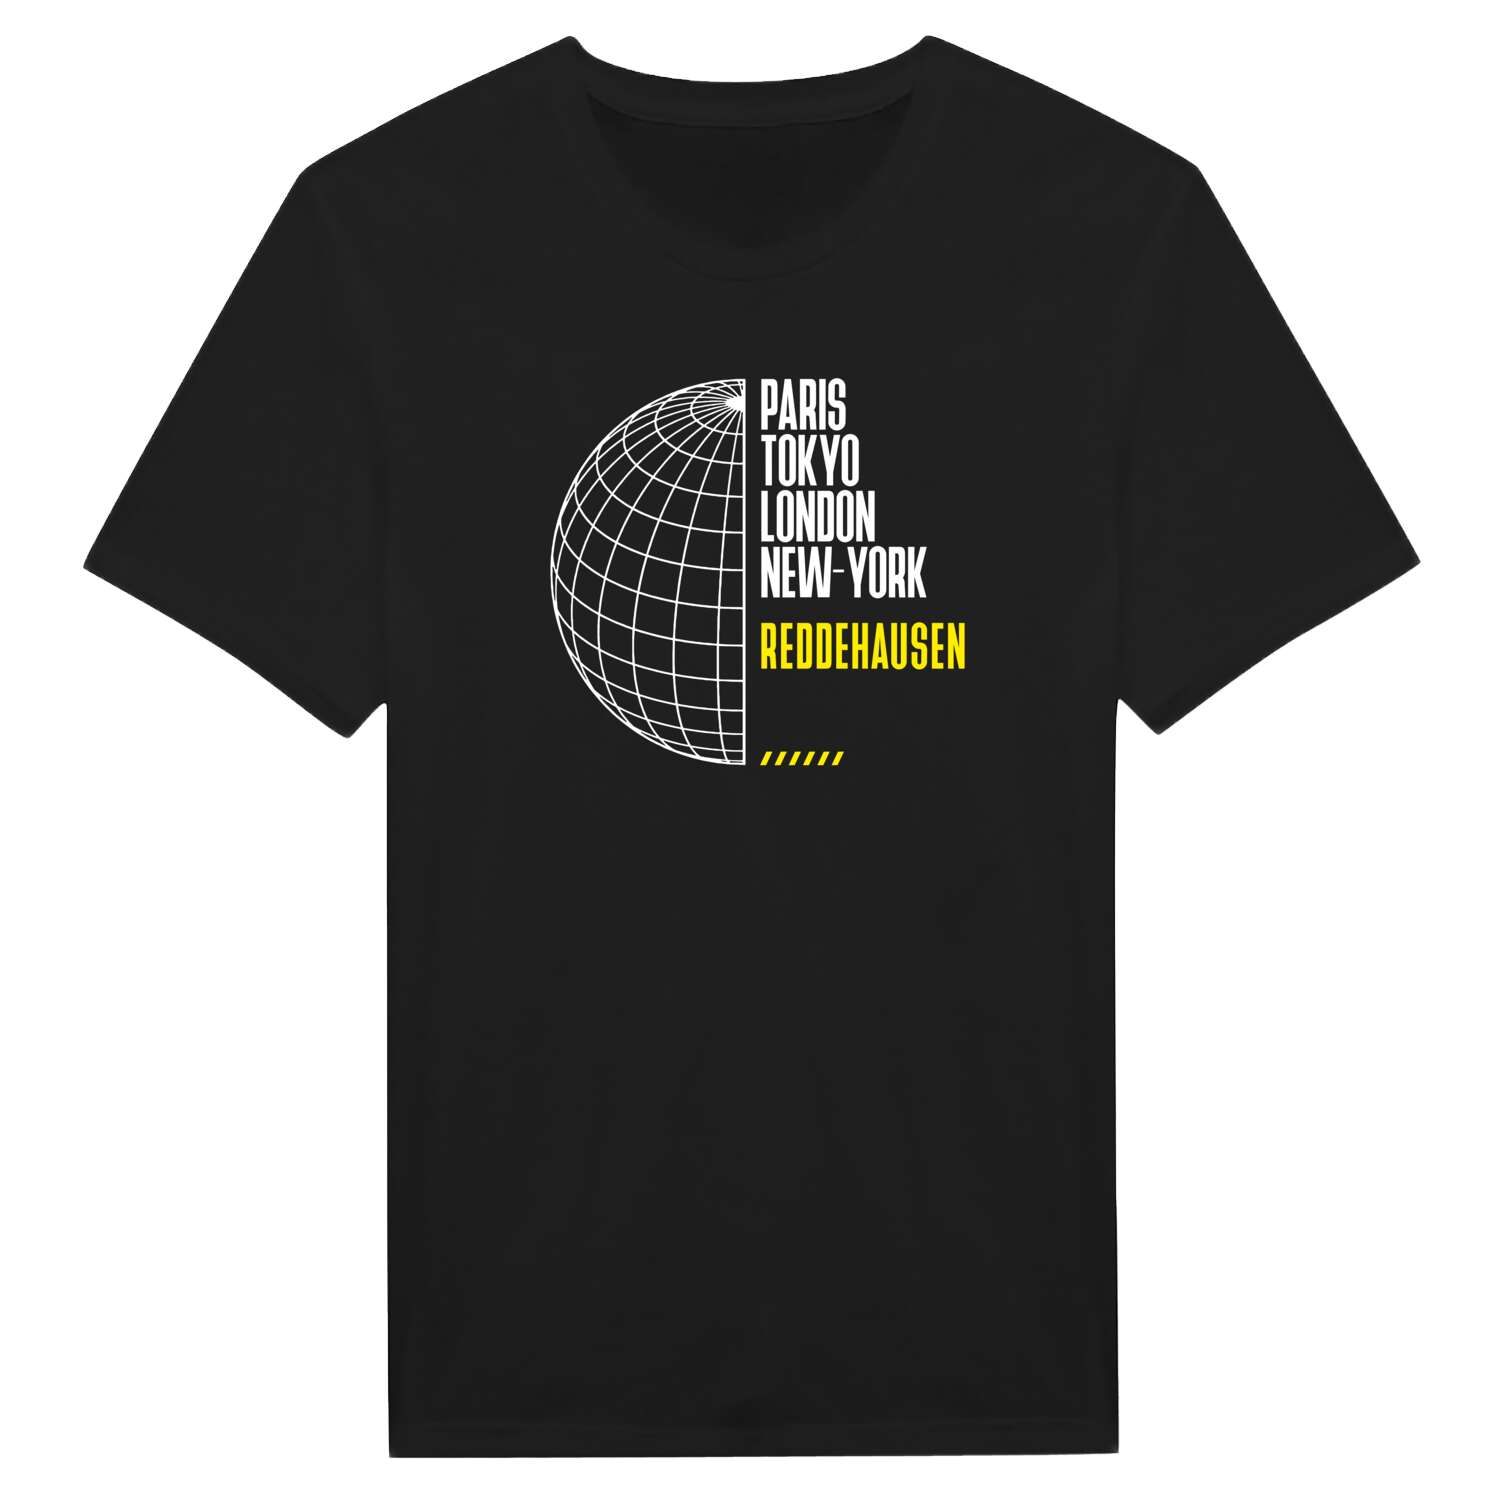 Reddehausen T-Shirt »Paris Tokyo London«